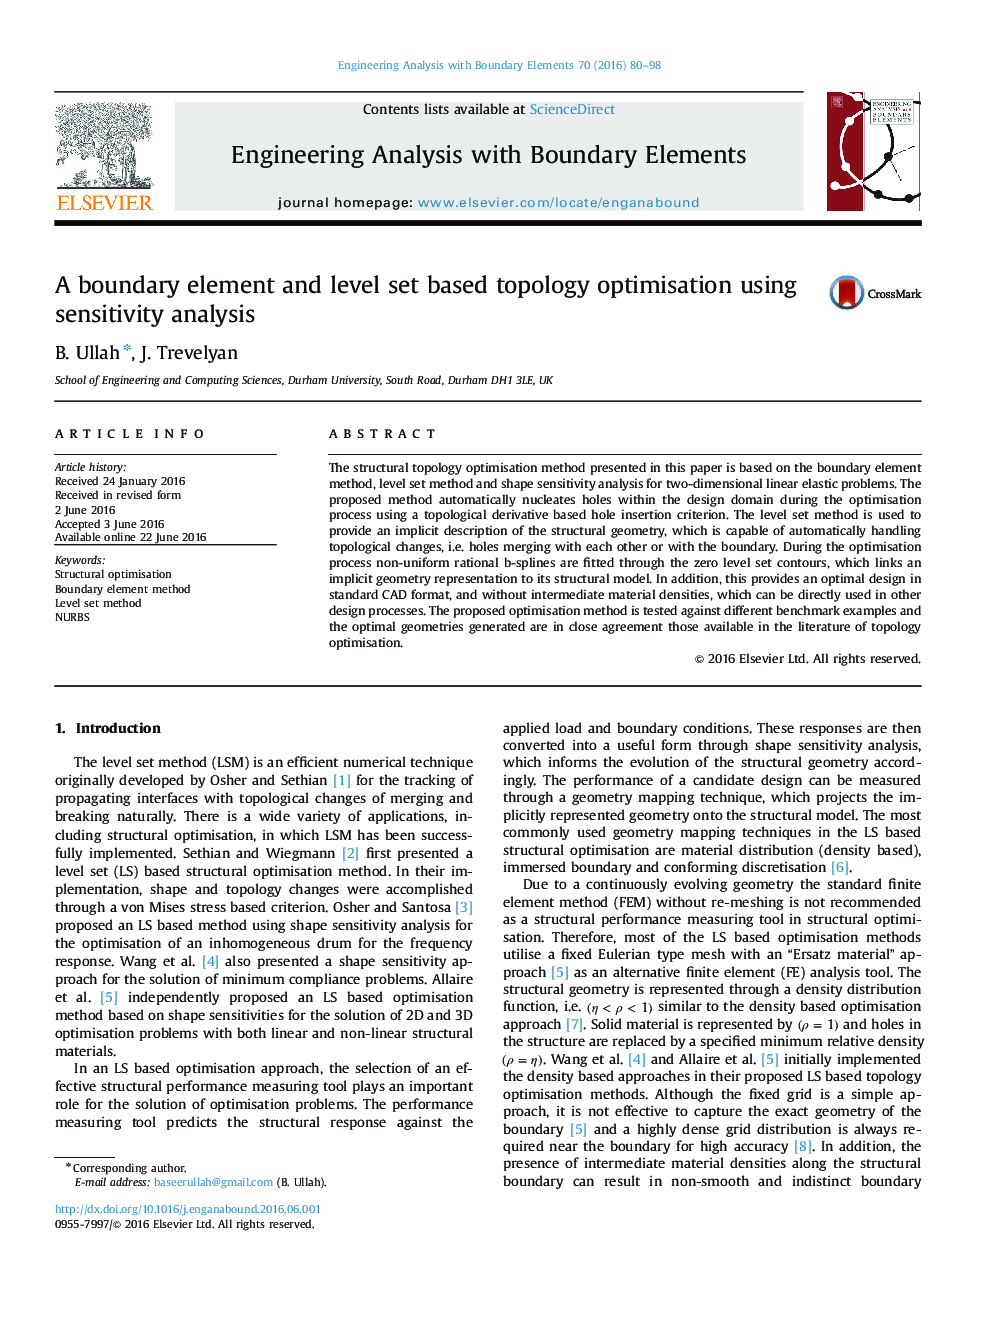 A boundary element and level set based topology optimisation using sensitivity analysis